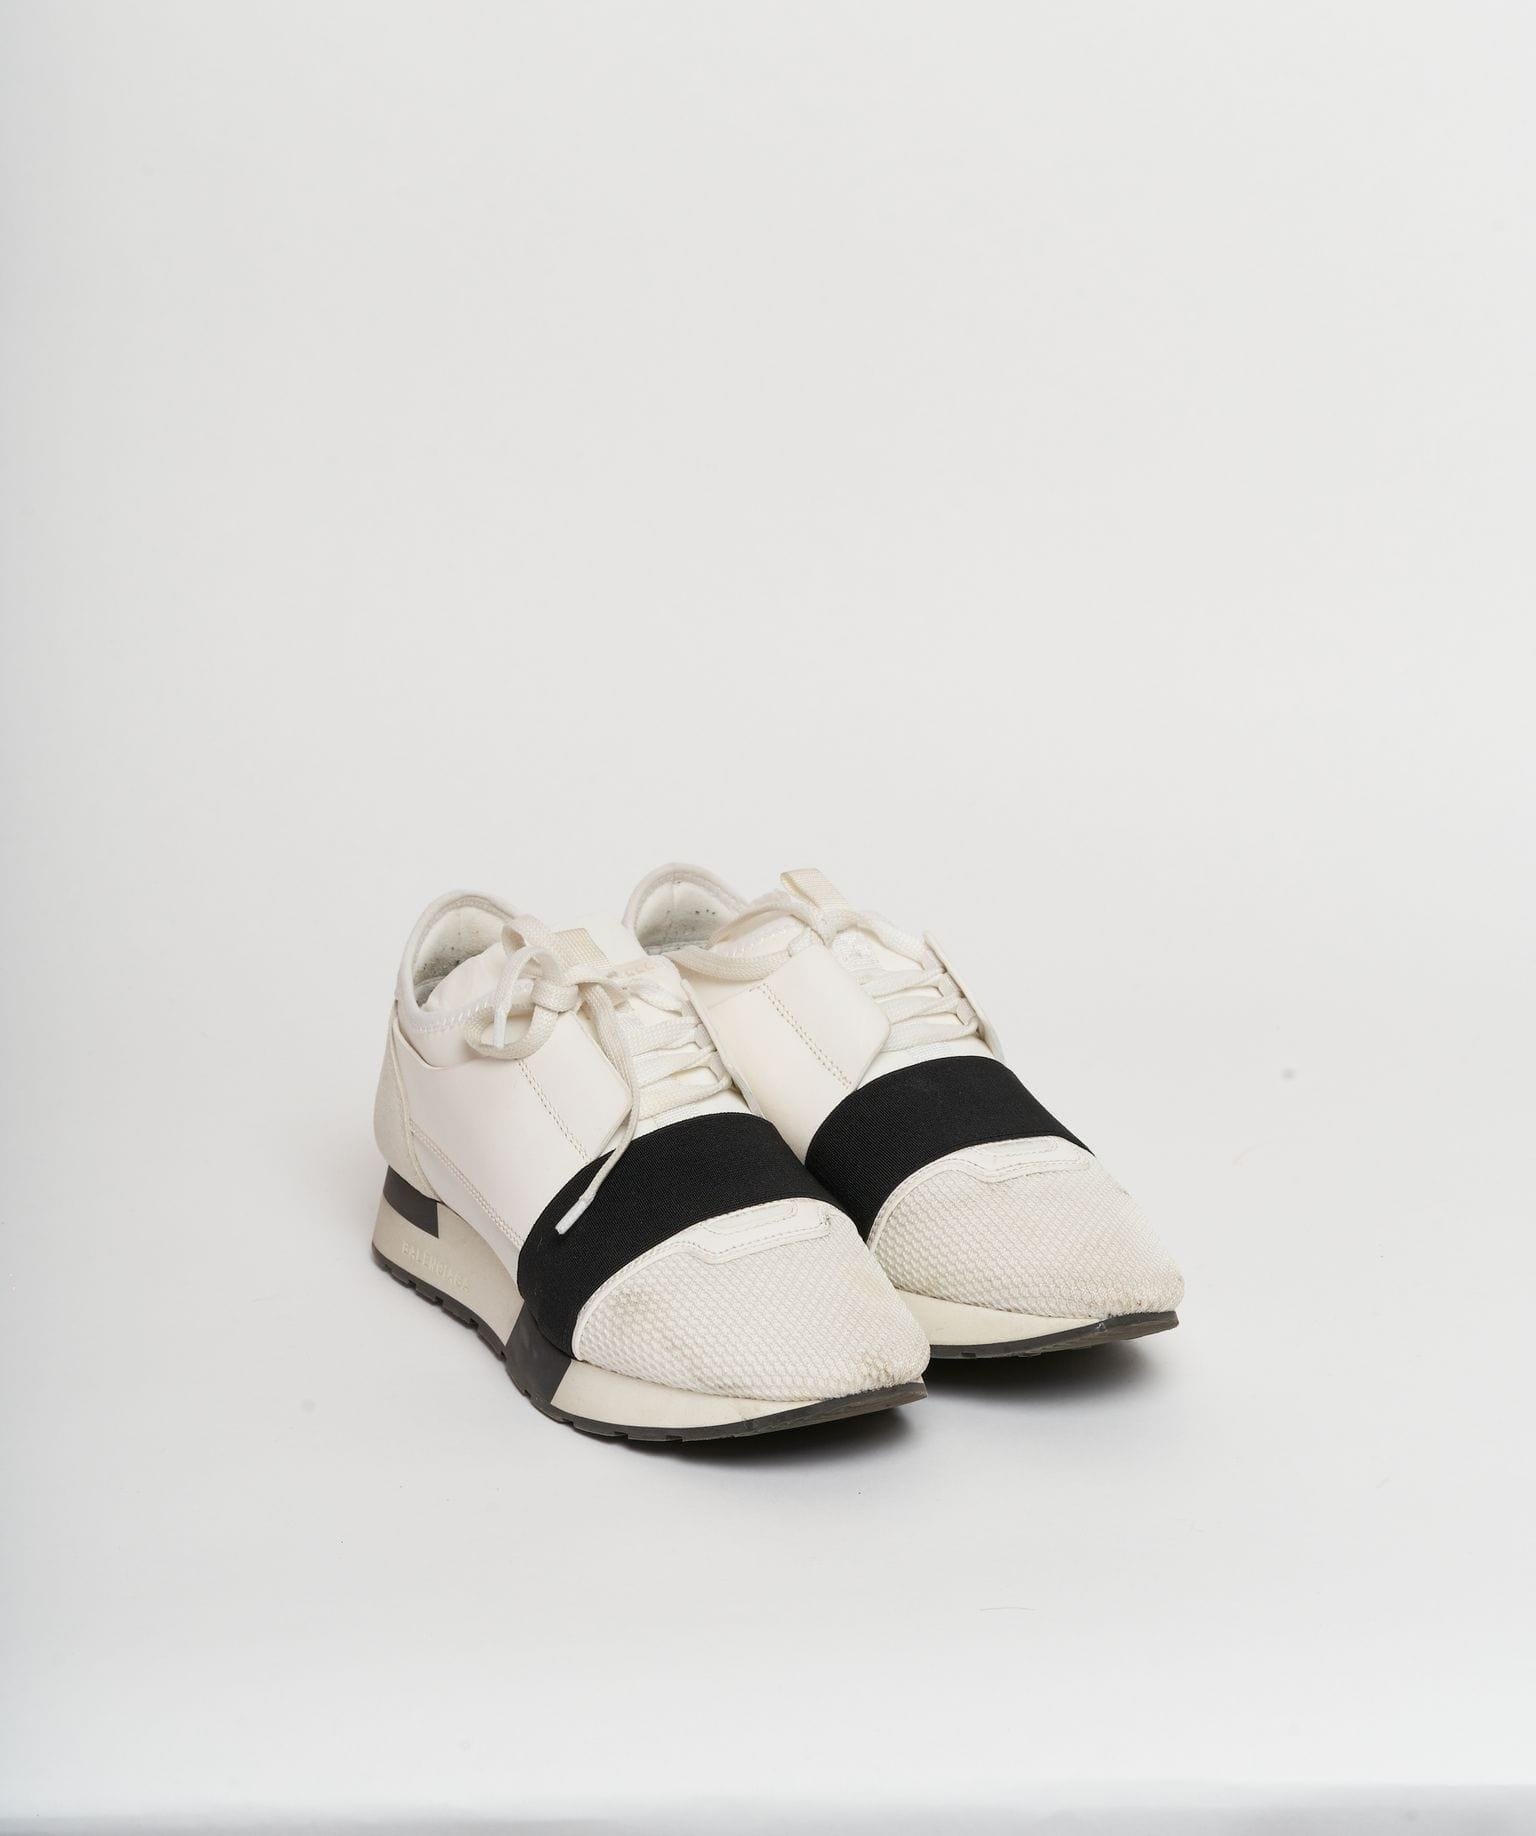 Balenciaga Balenciaga White And Black Runner Sneakers Size 38